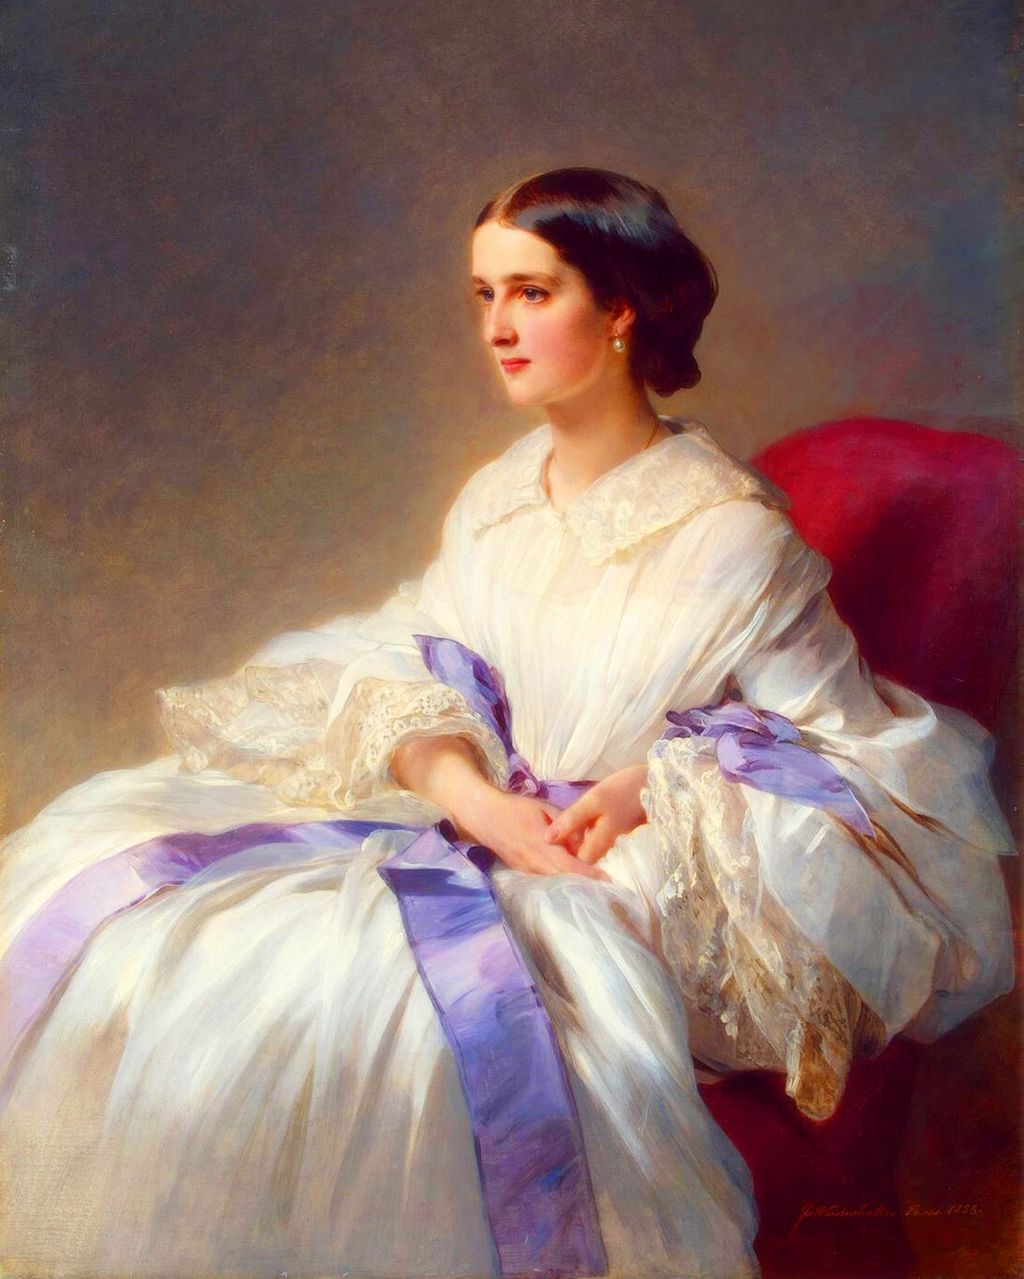 Countess_Olga_Shuvalova,1858